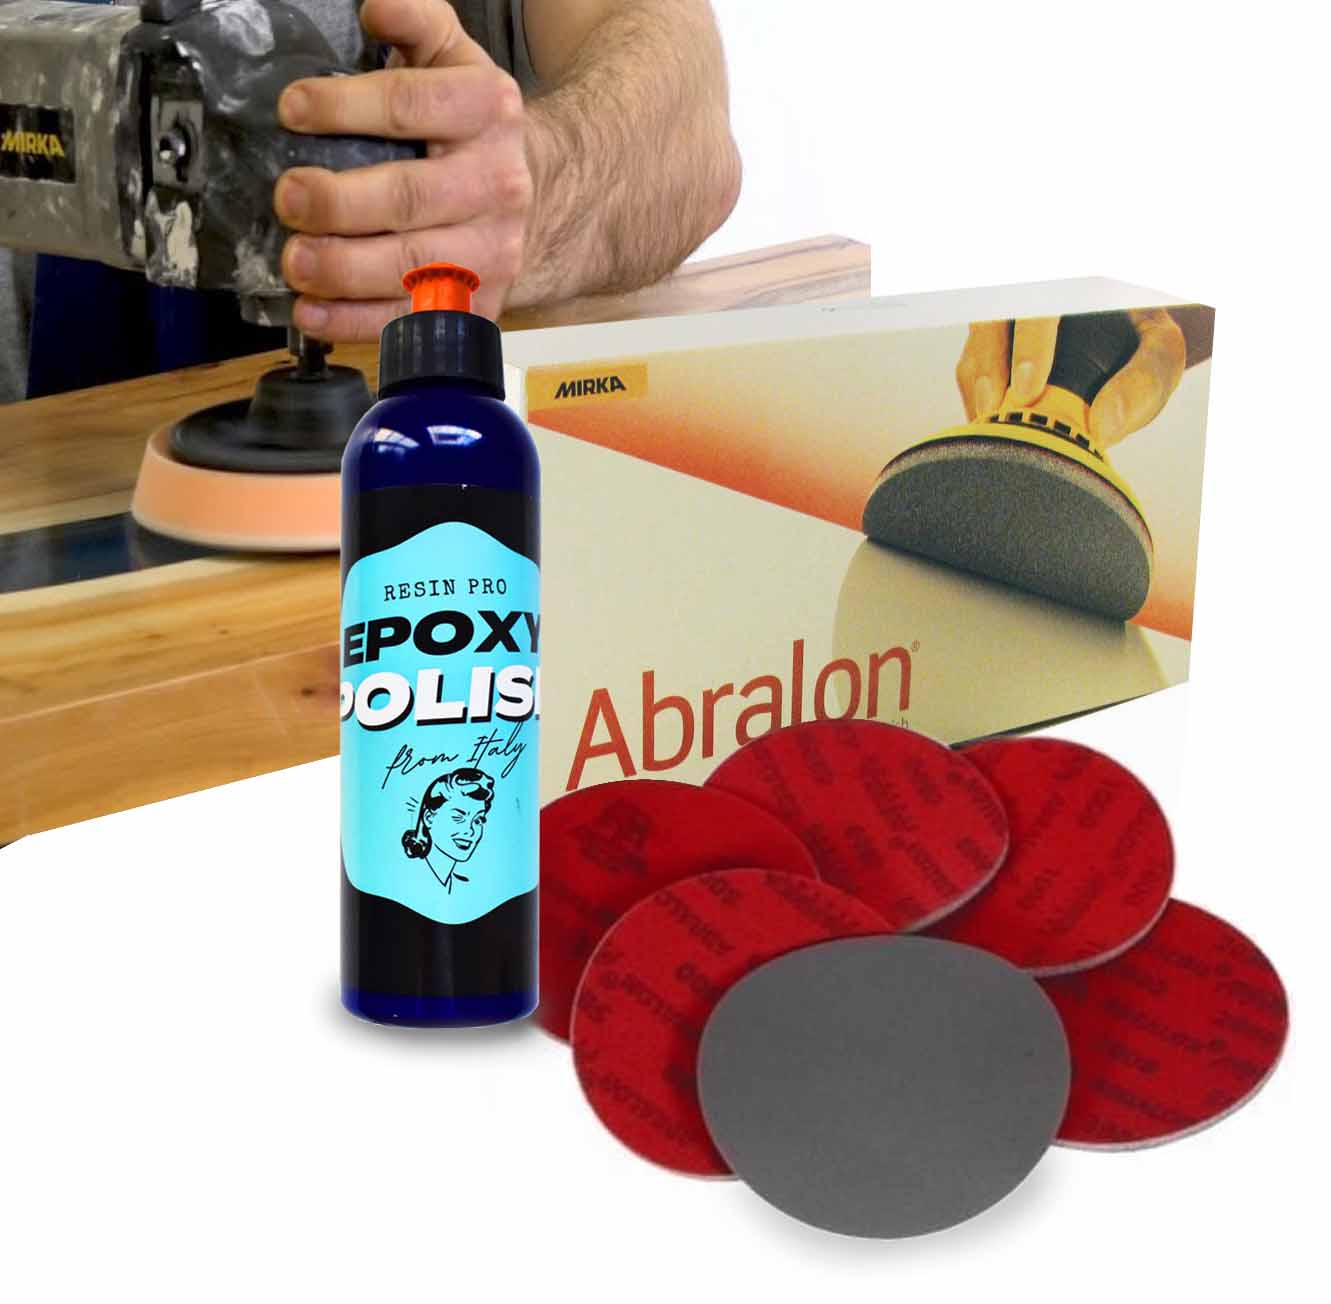 Kit de pulido “Abralon” de Mirka con Lijas + Pulimento para Resinas – ¡Todo lo que necesitas para un acabado perfecto!